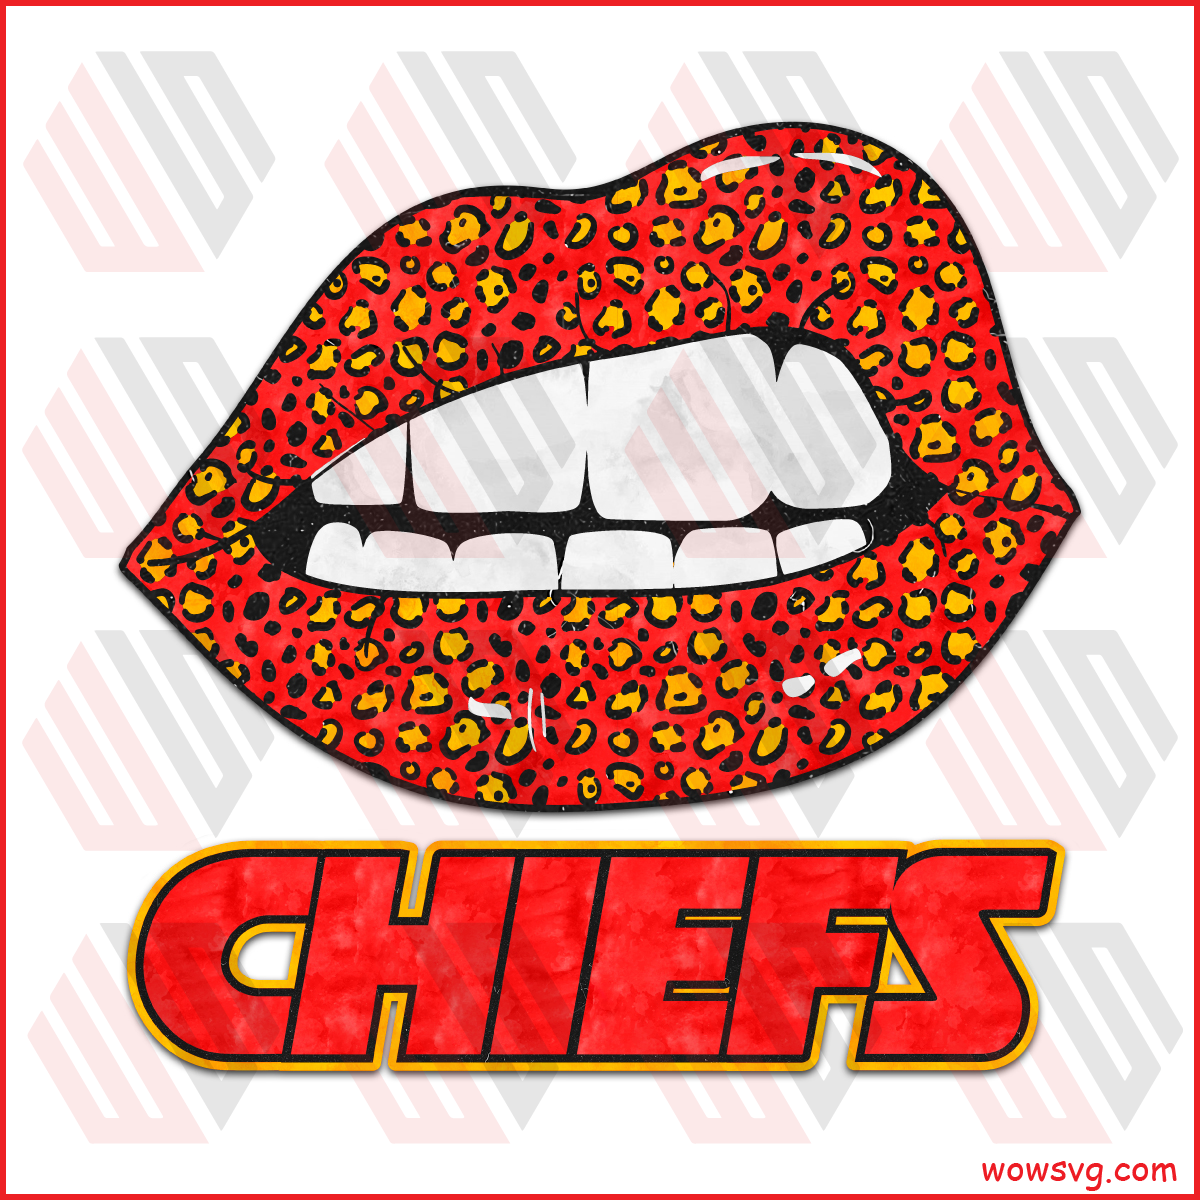 kc chiefs logo png